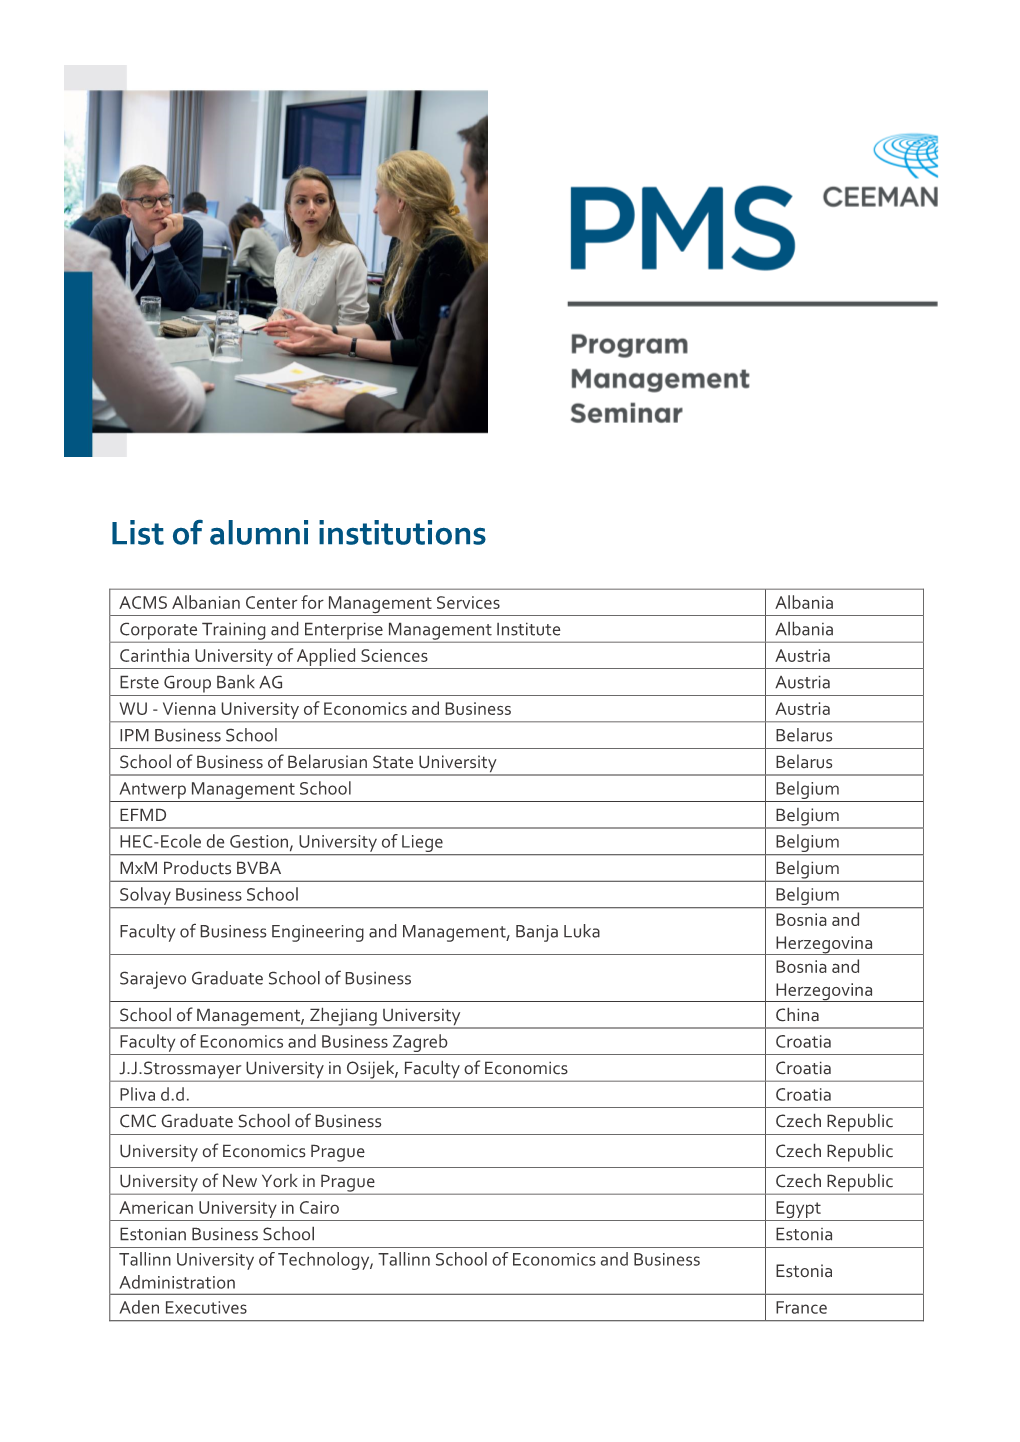 List of Alumni Institutions